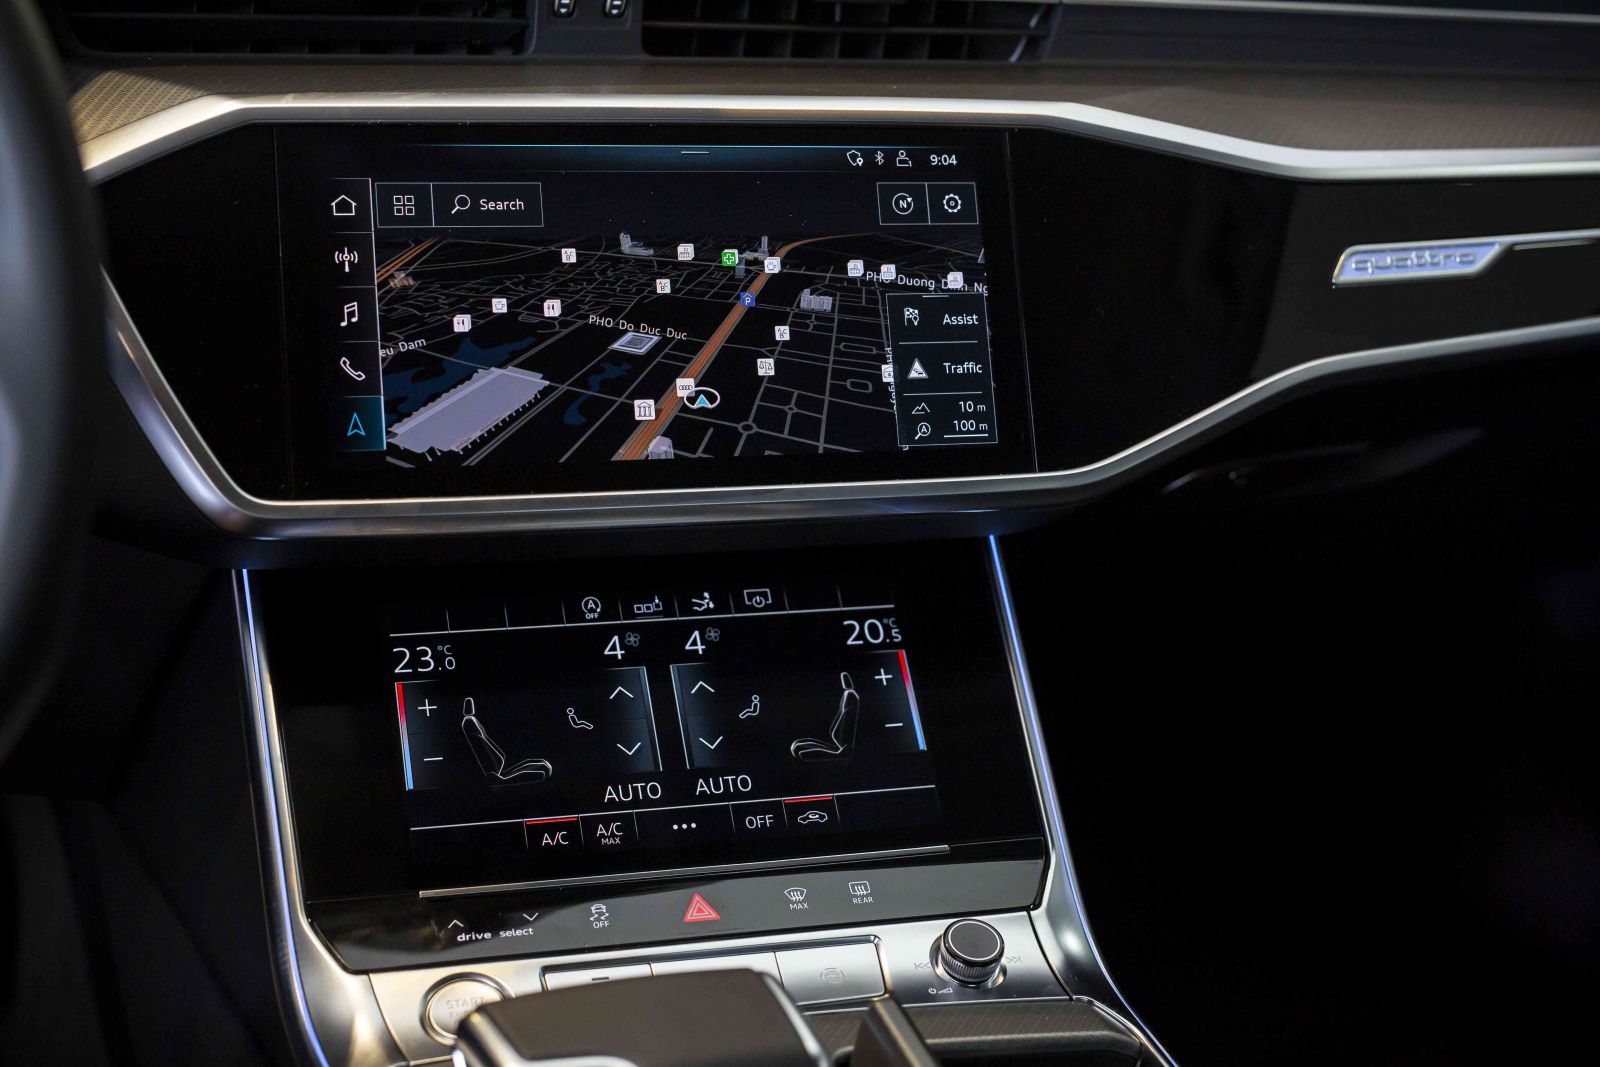  buồng lái ảo Audi Virtual Cockpit là hệ thống MMI hiện đại với 2 màn hình cảm ứng